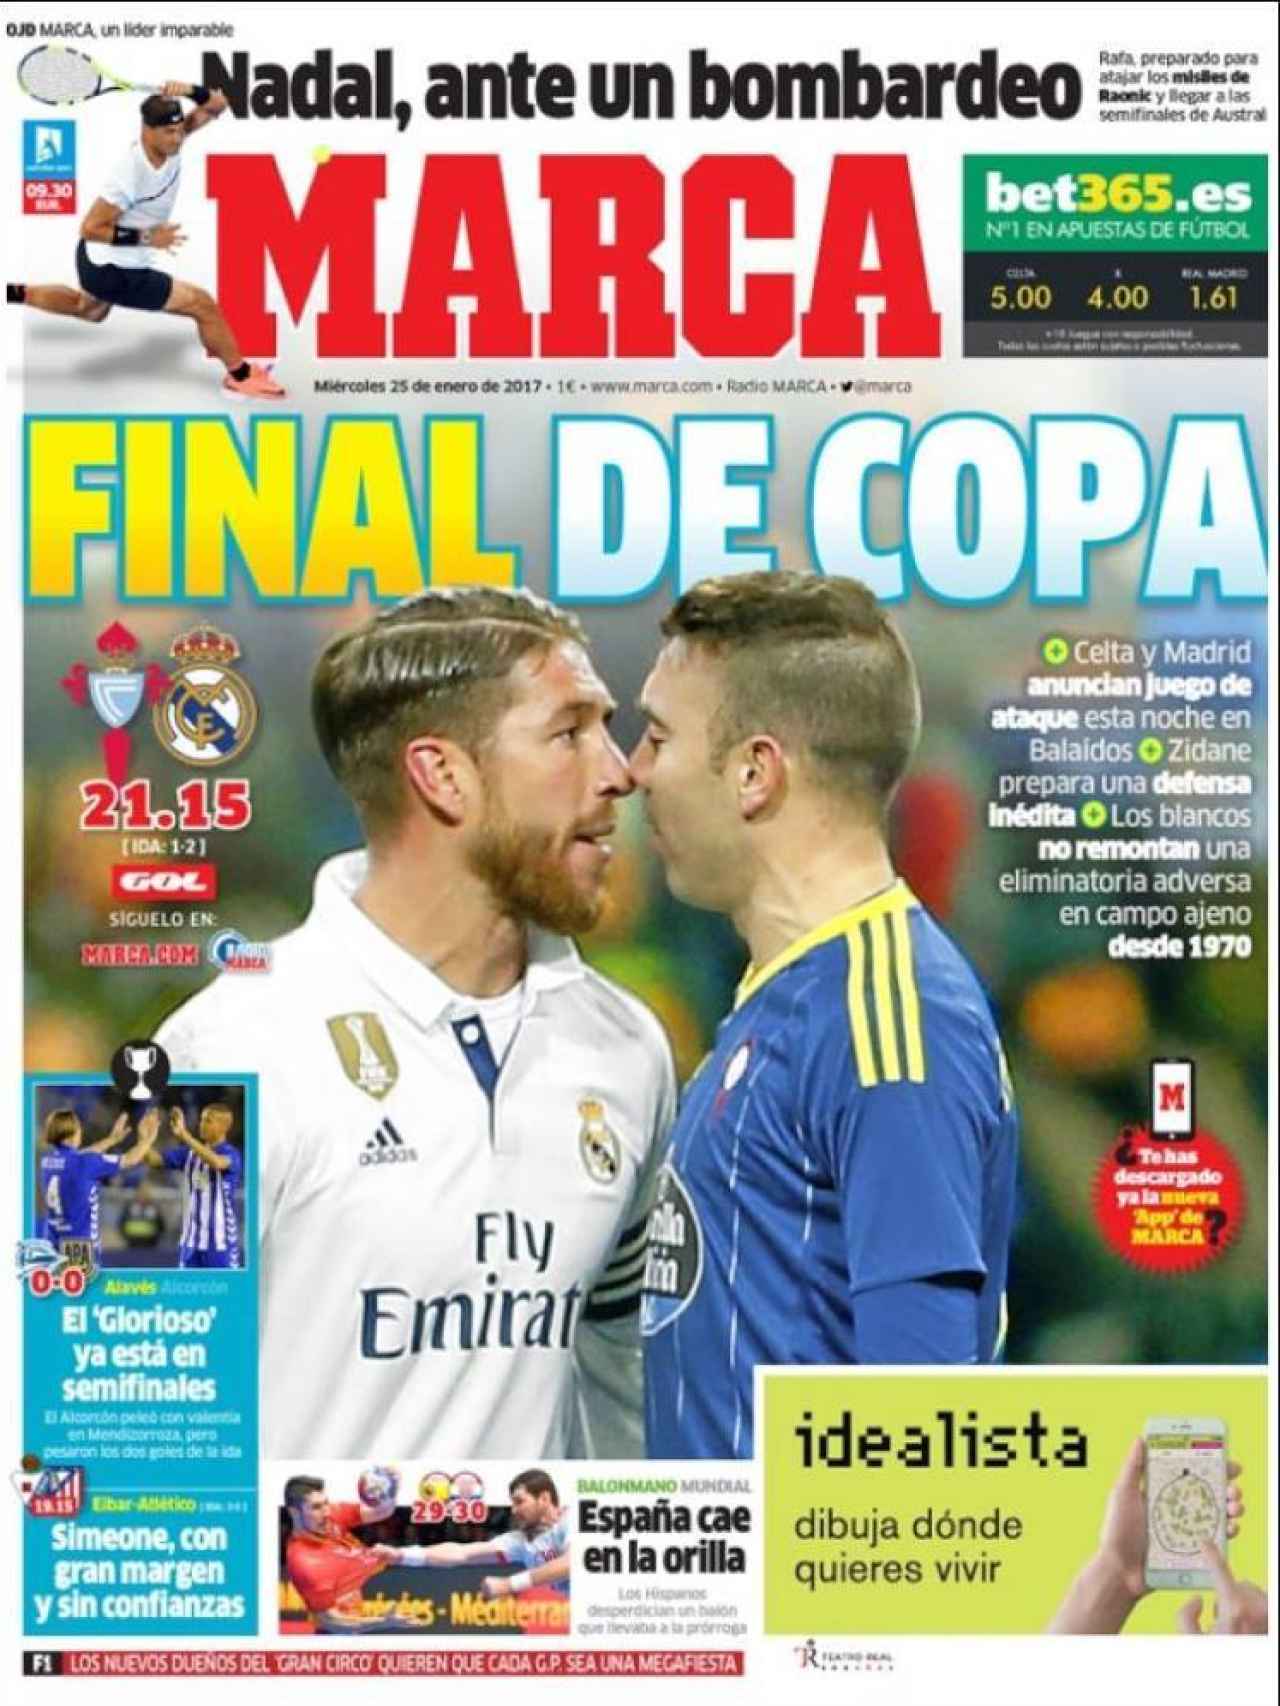 La vuelta de los cuartos de final coperos entre Madrid y Celta copa la portada de MARCA.